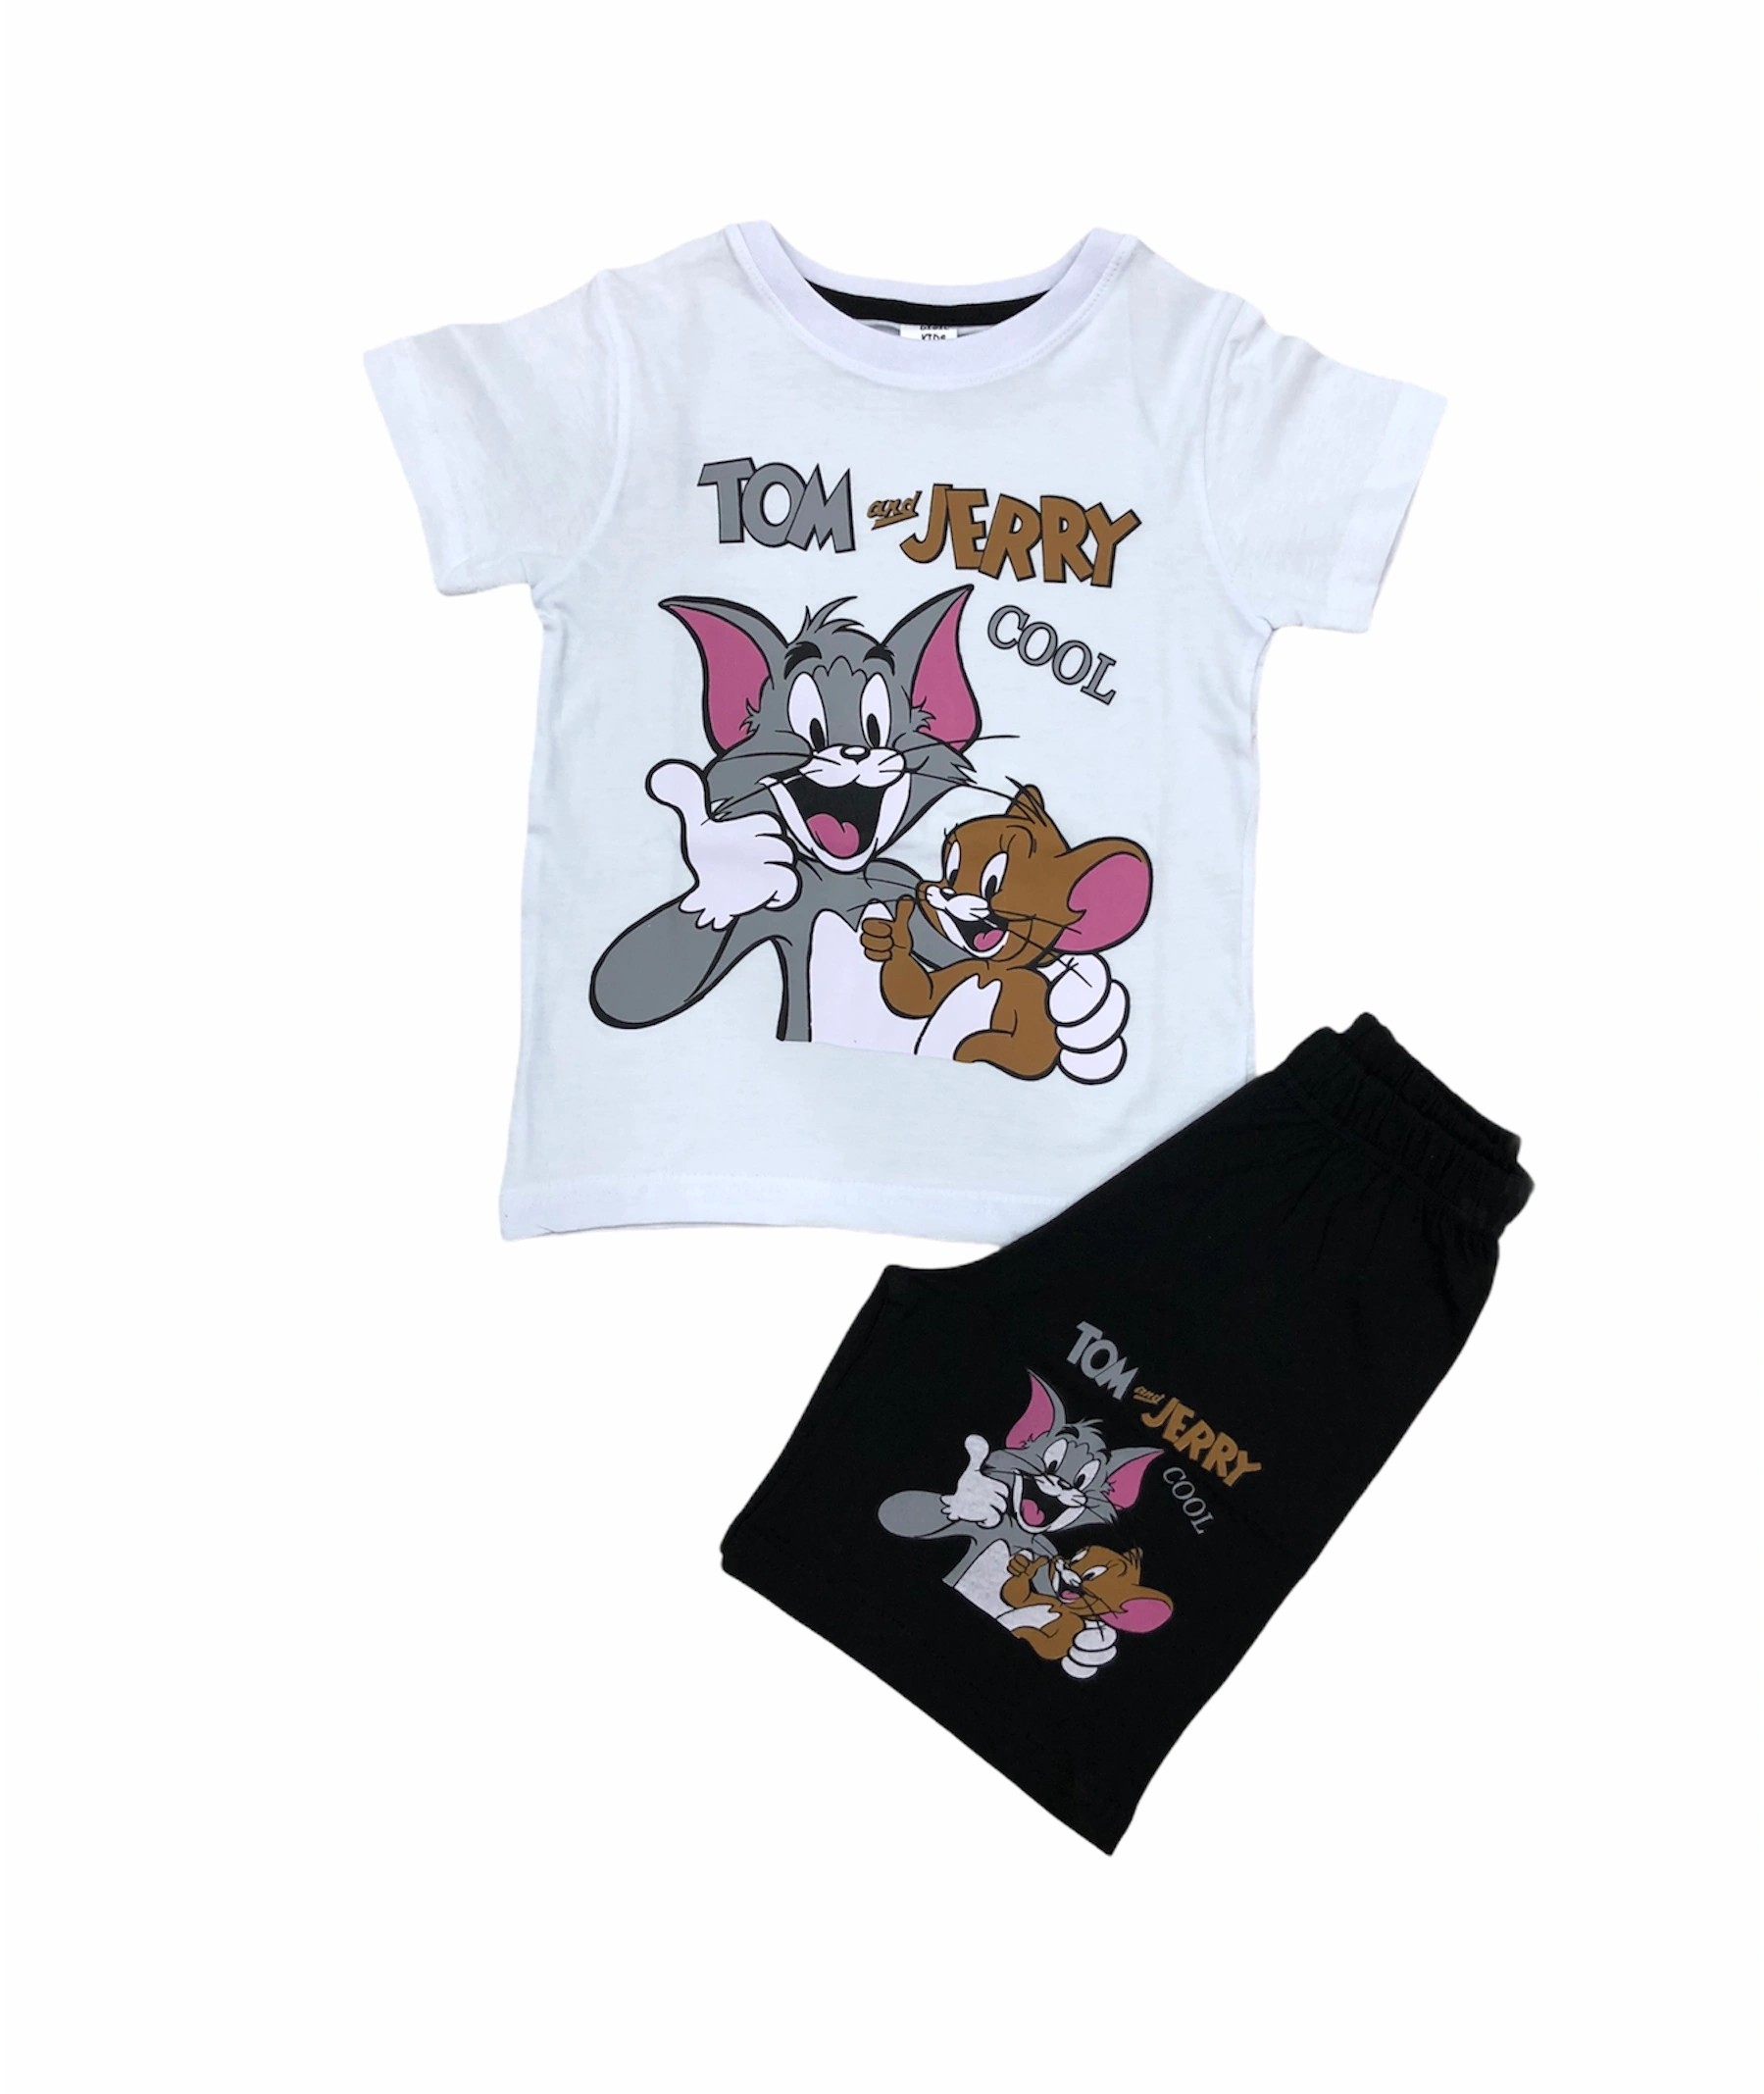 Soie Cotton Erkek Çocuk Tom ve Jerry Baskılı Şortlu Penye Takım  - Beyaz-Siyah - 1000020983